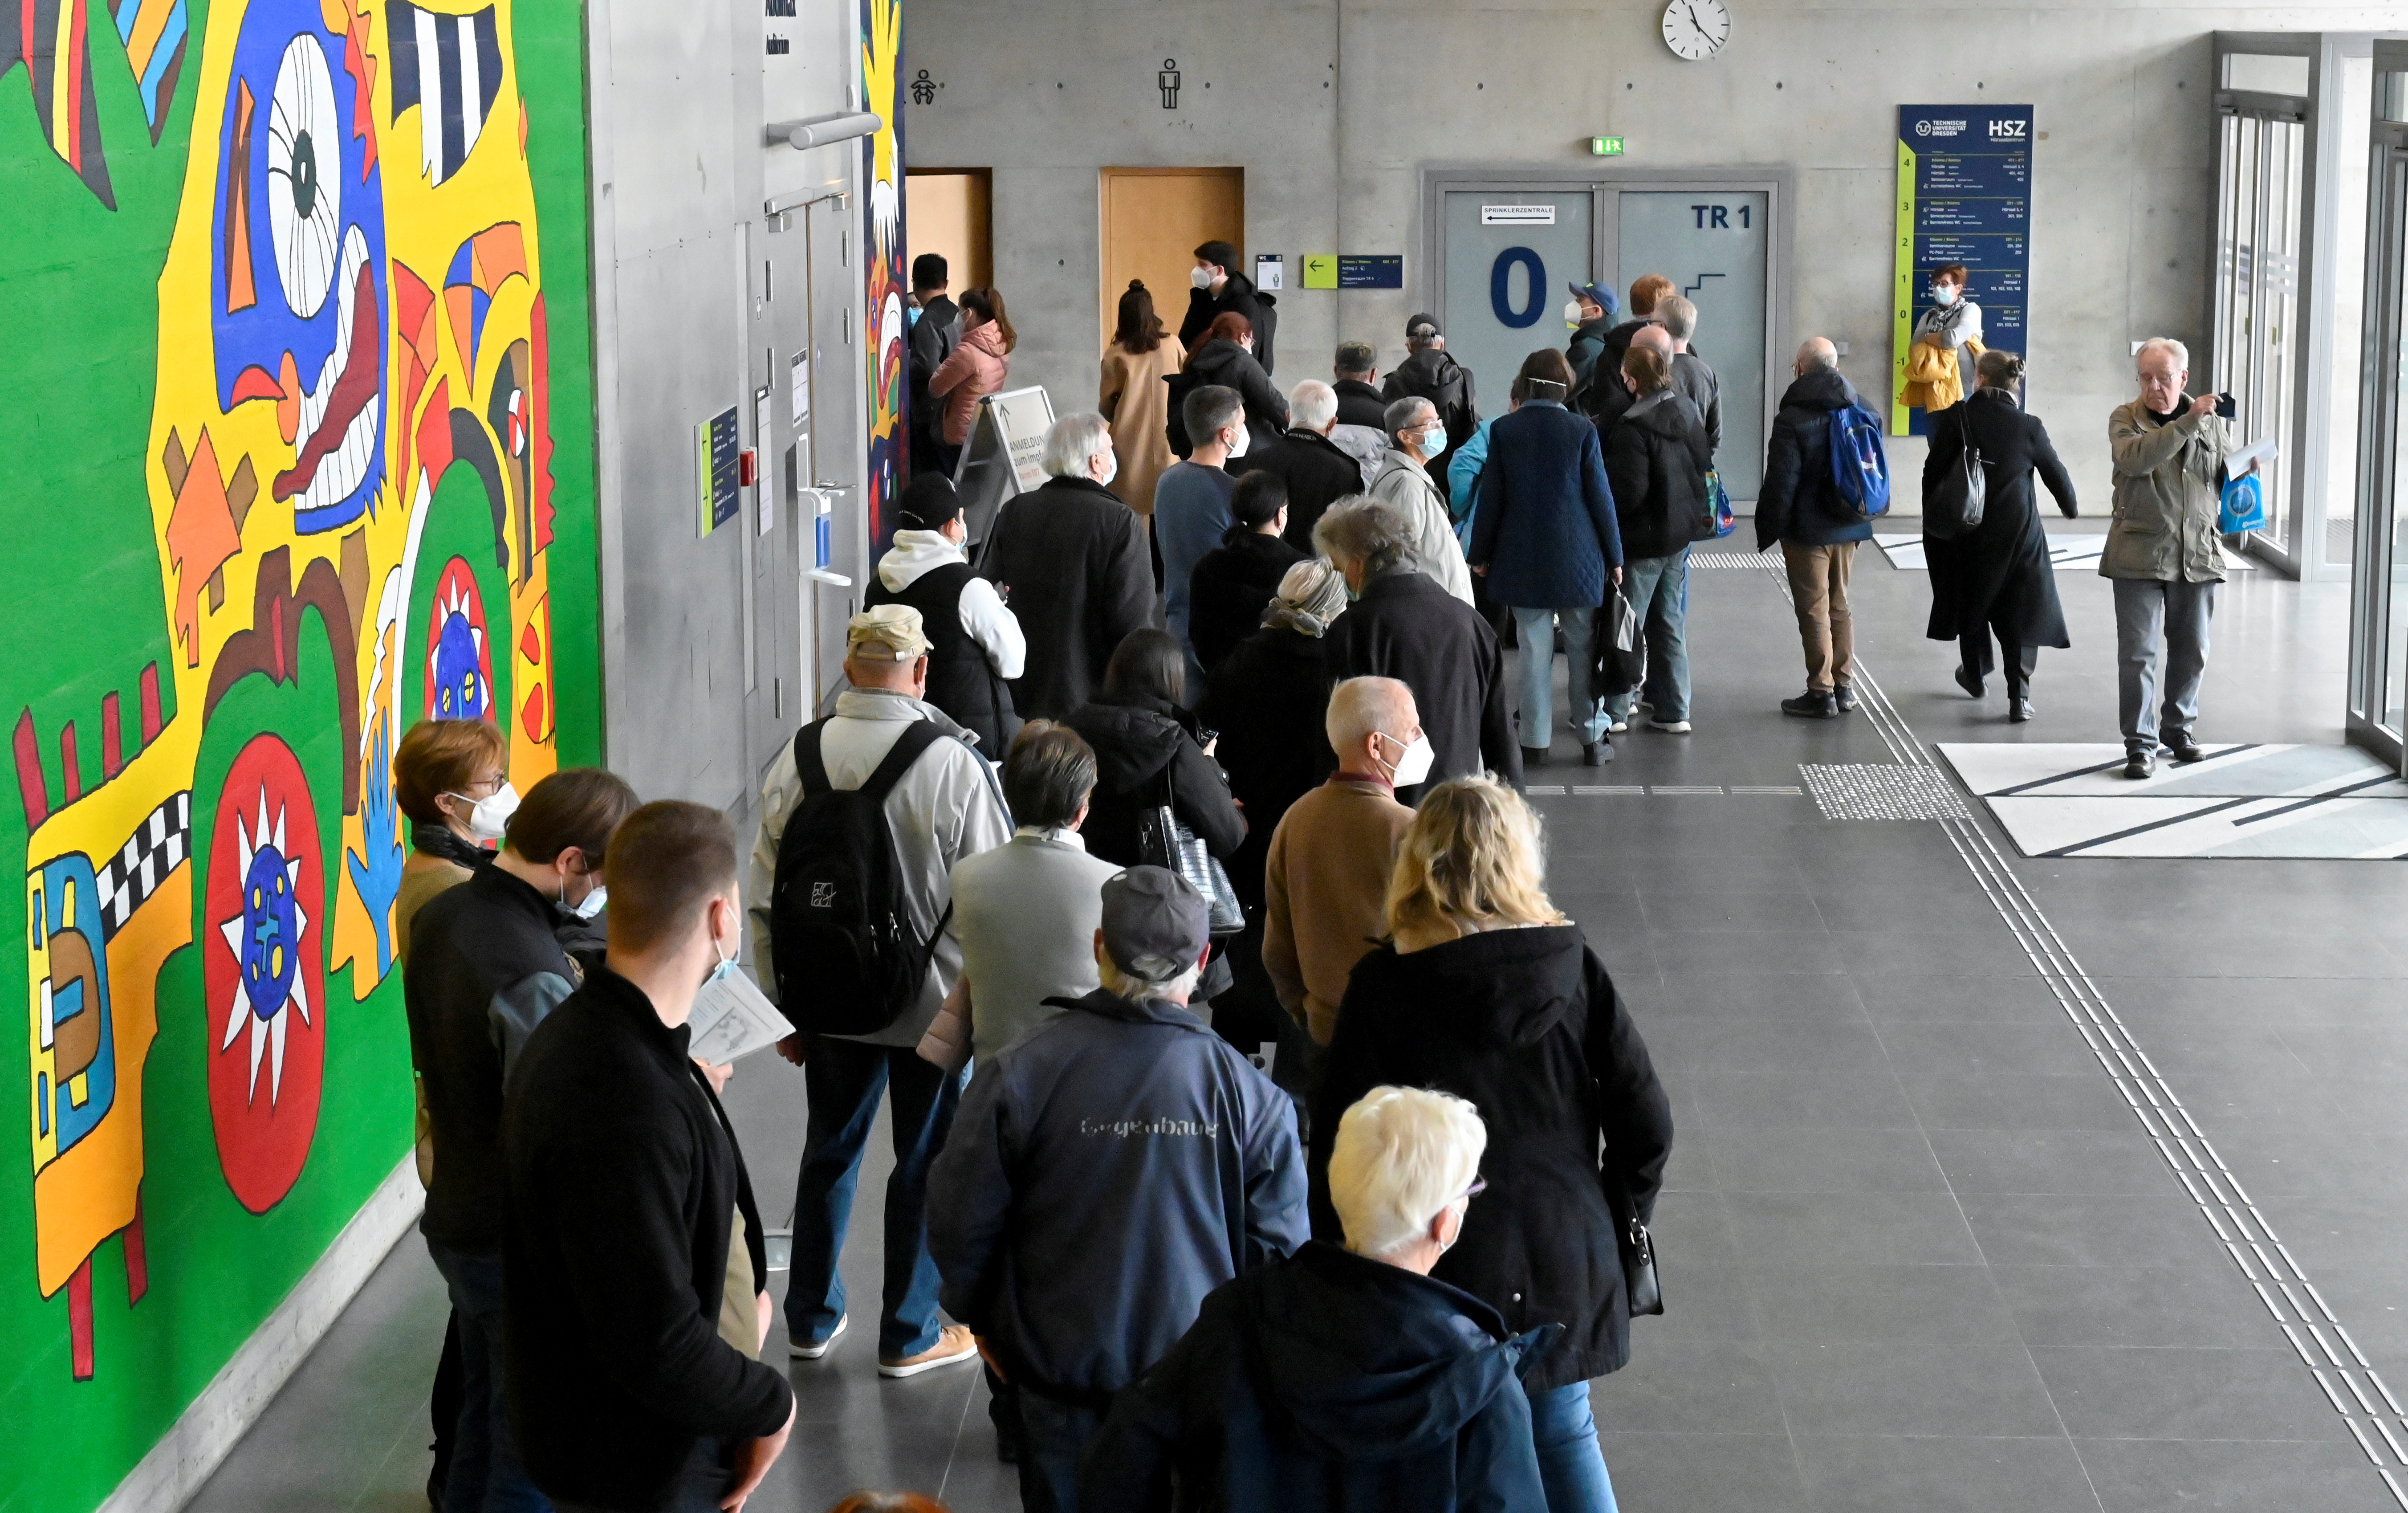 Οι άνθρωποι κάνουν ουρά για εμβολιασμό σε ένα προσωρινό κέντρο εμβολιασμού μέσα στο κτίριο της πανεπιστημιούπολης του πανεπιστημίου Technische Universitaet στη Δρέσδη, Γερμανία, 8 Νοεμβρίου 2021. REUTERS/Matthias Rietschel